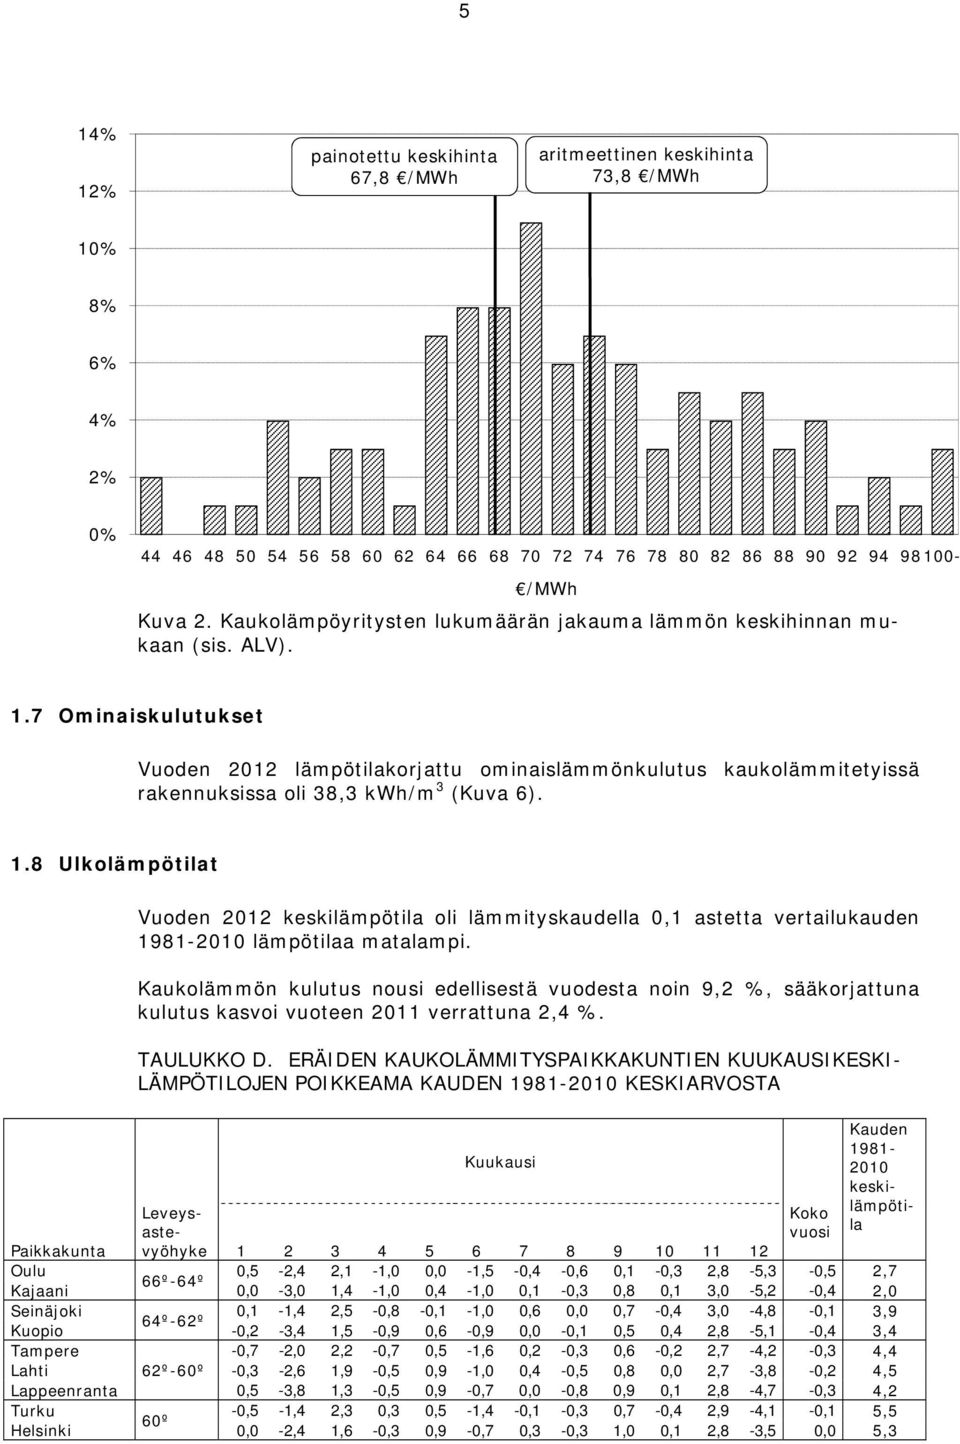 7 Ominaiskulutukset Vuoden 2012 lämpötilakorjattu ominaislämmönkulutus kaukolämmitetyissä rakennuksissa oli 38,3 kwh/m 3 (Kuva 6). 1.